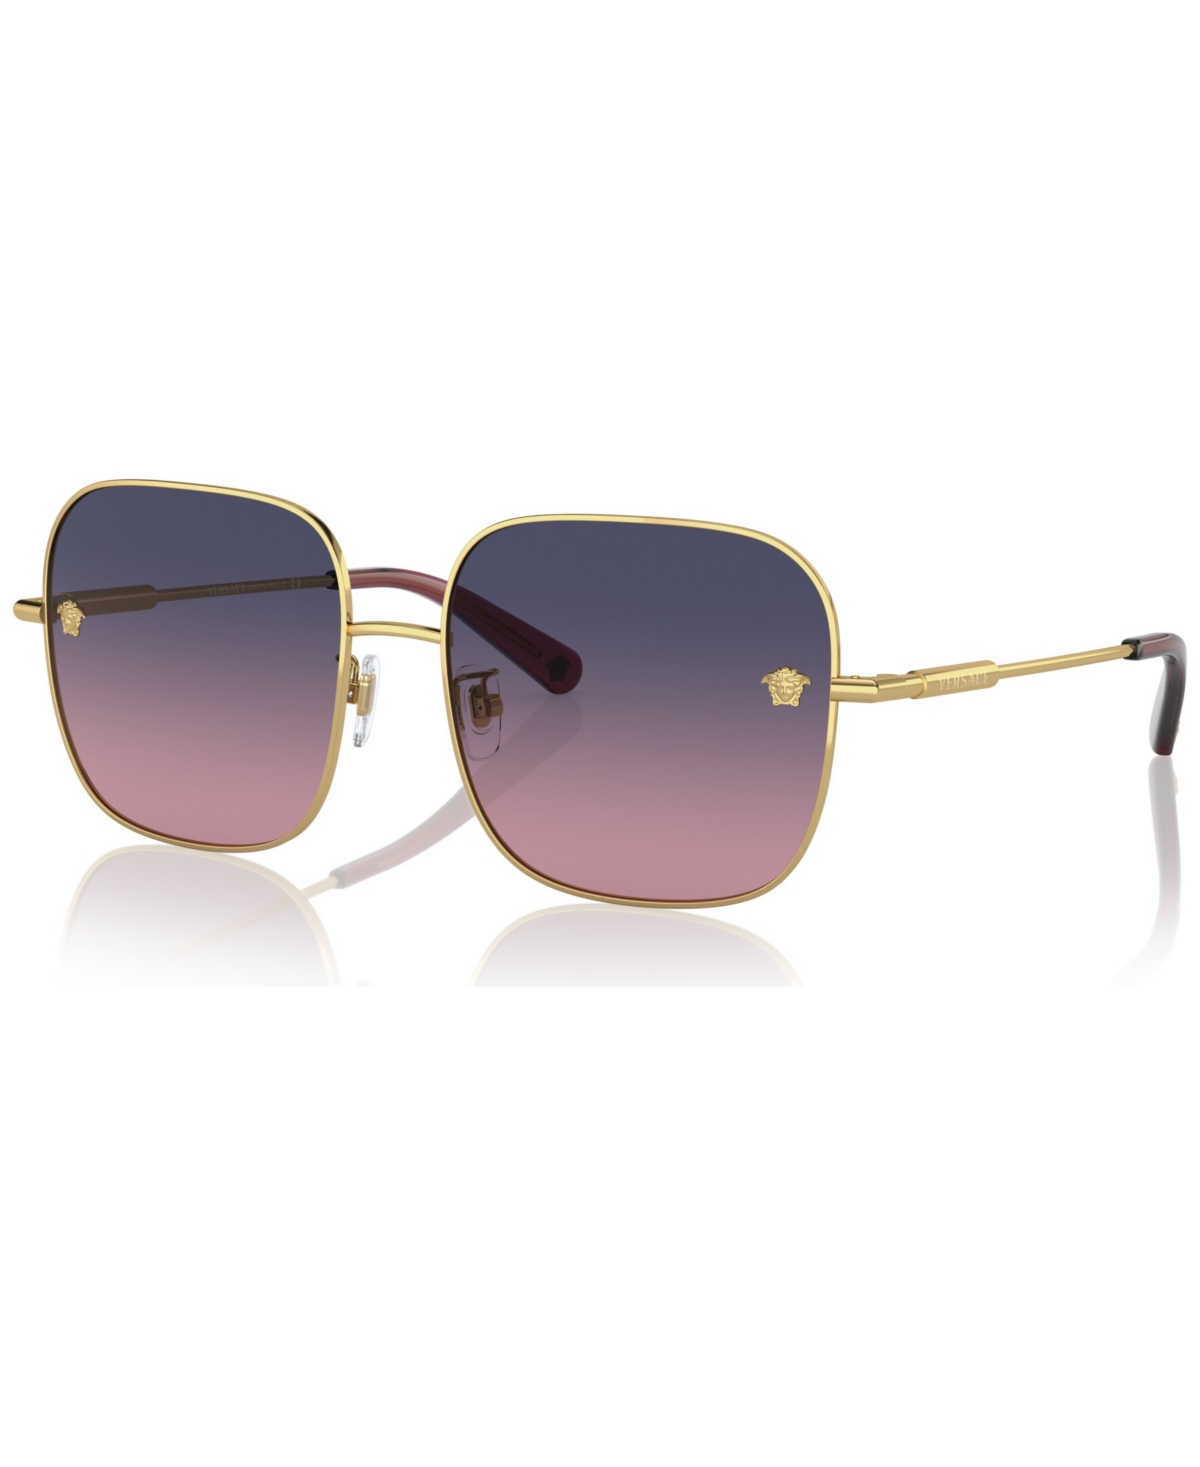 Women's Sunglasses, VE2246D59-y 59 - Gold-Tone